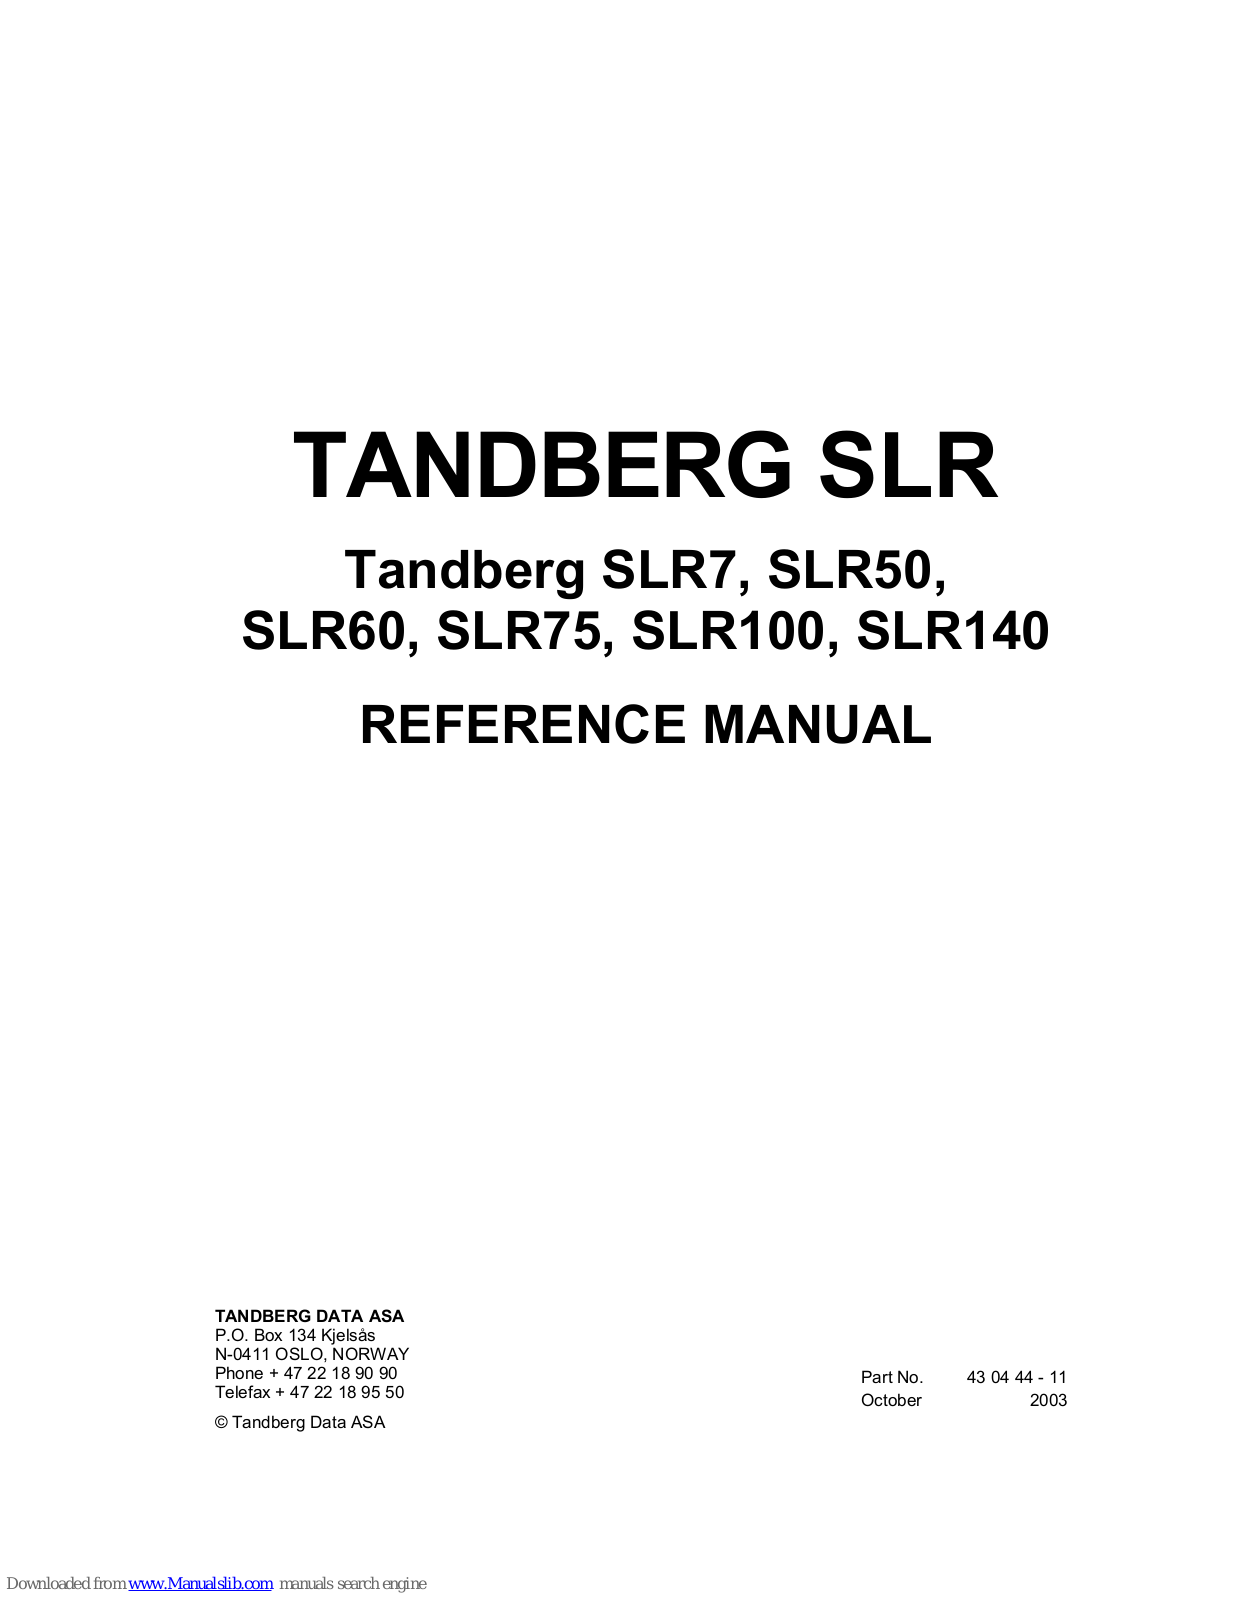 TANDBERG SLR7, SLR50, SLR60, SLR75, SLR100 Reference Manual